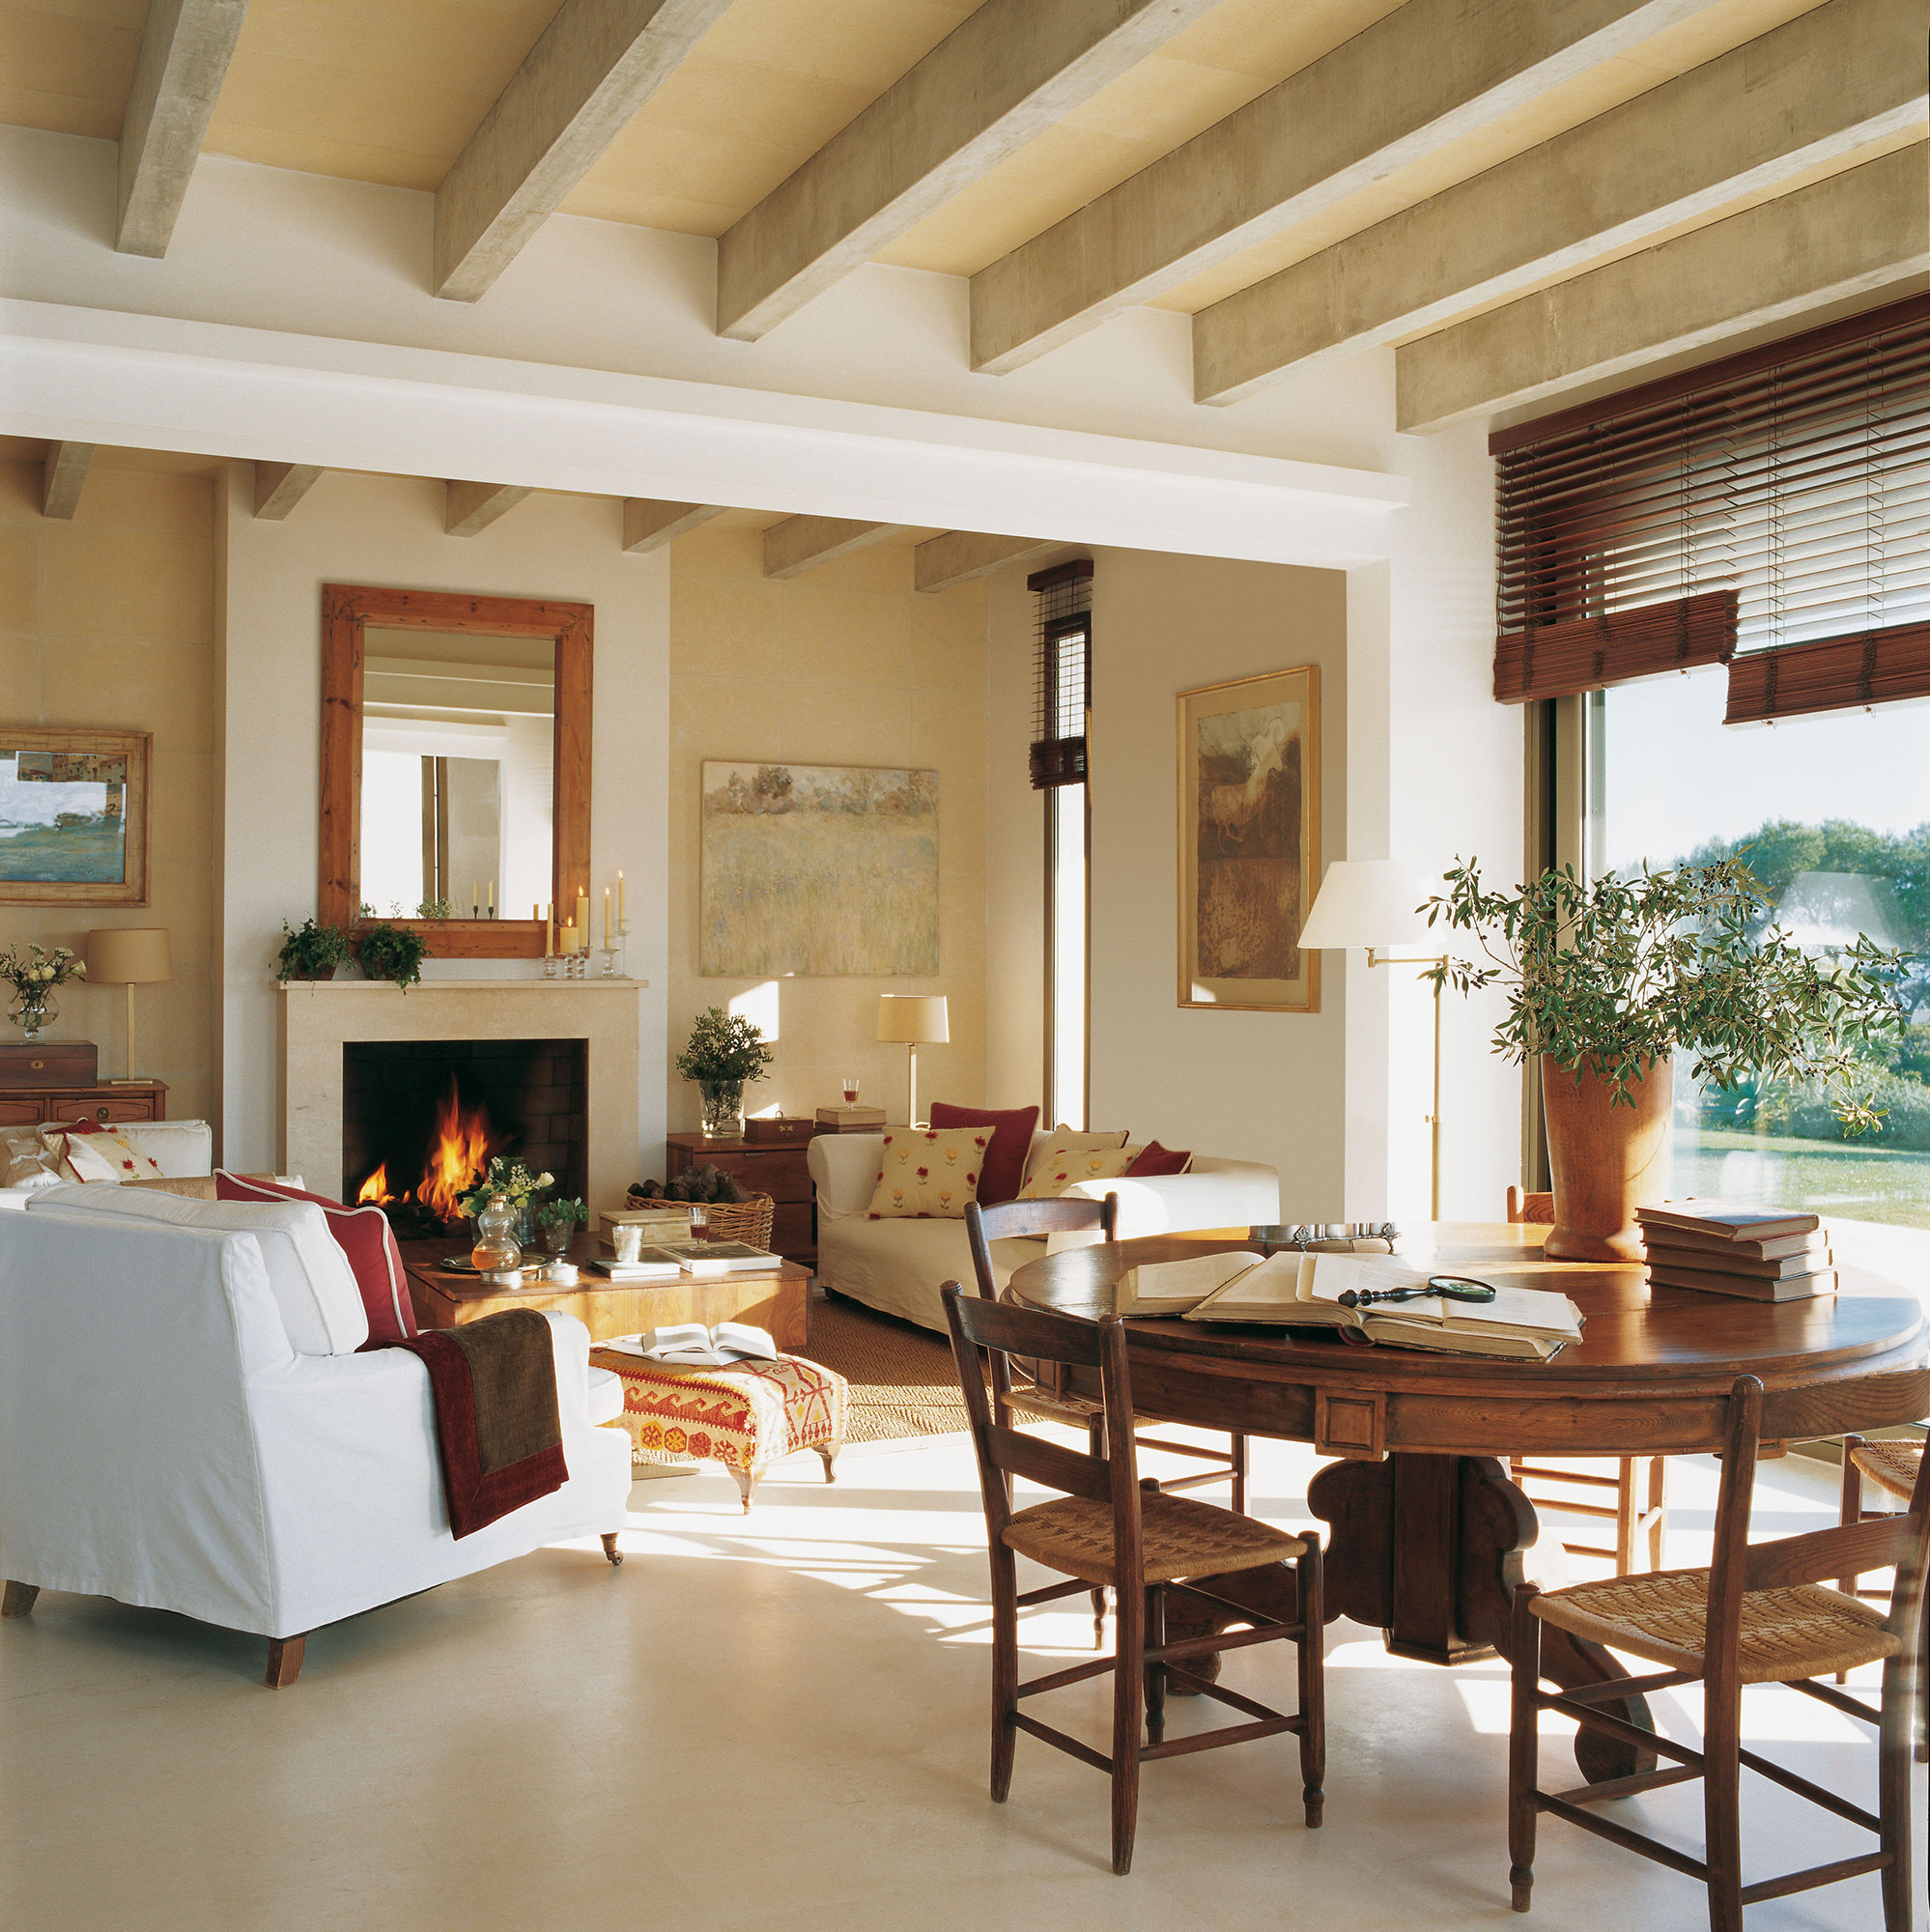 Salón rústico con sofás blancos y muebles de madera.